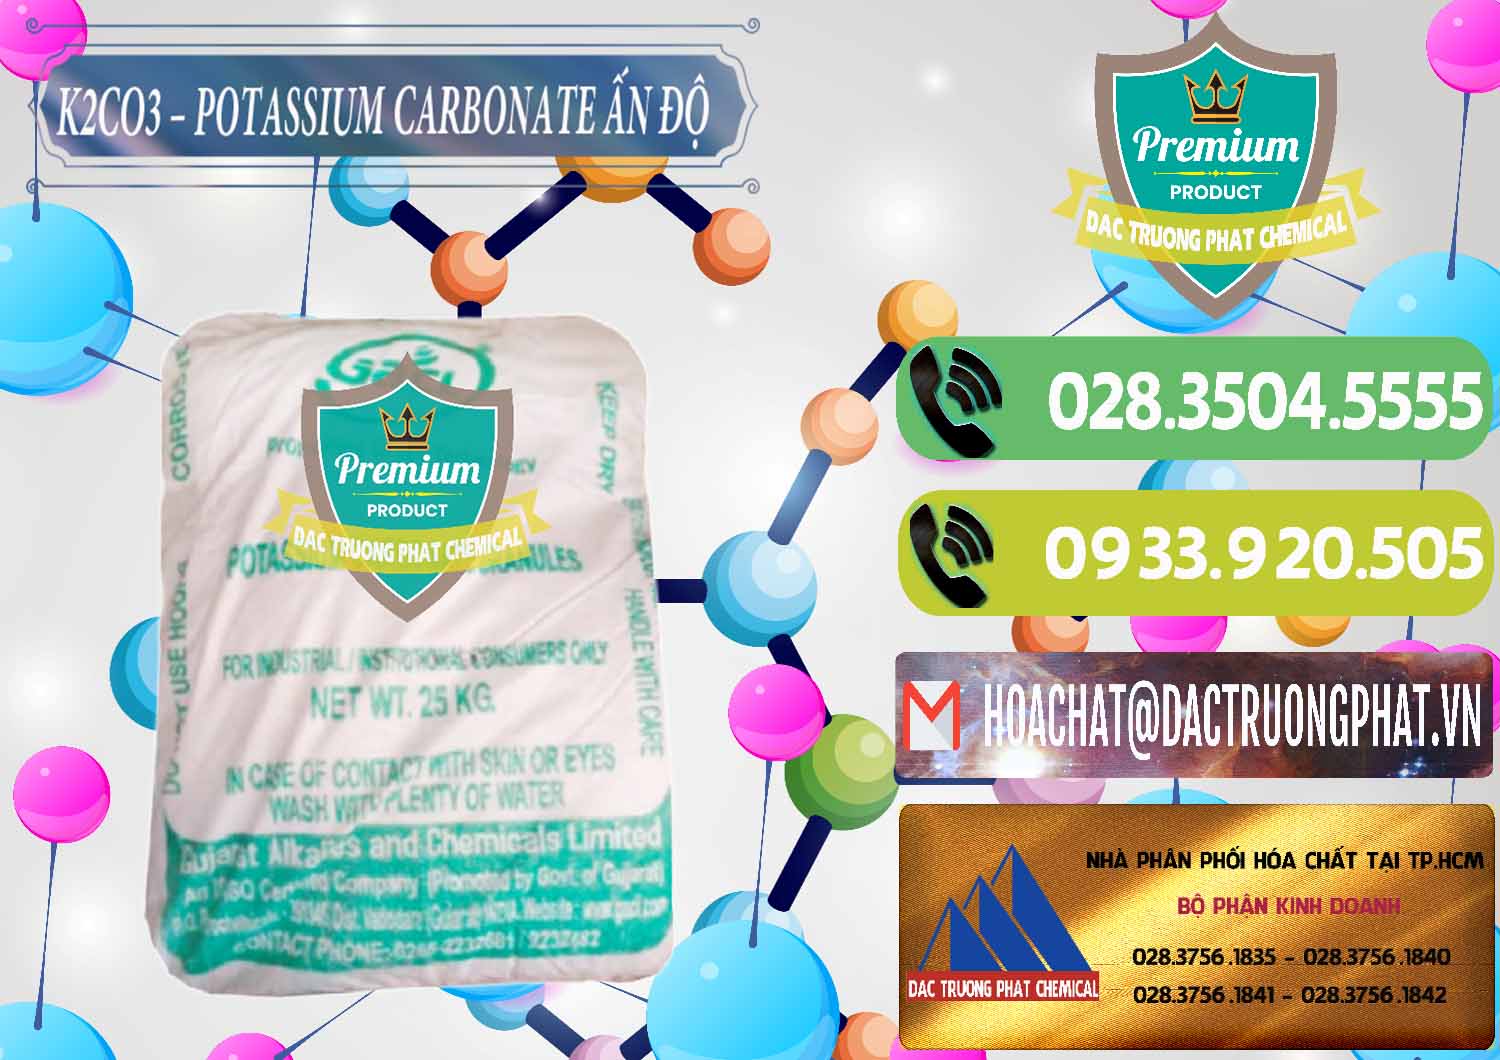 Đơn vị cung cấp và bán K2Co3 – Potassium Carbonate GACL Ấn Độ India - 0472 - Đơn vị cung cấp _ kinh doanh hóa chất tại TP.HCM - hoachatmientay.vn